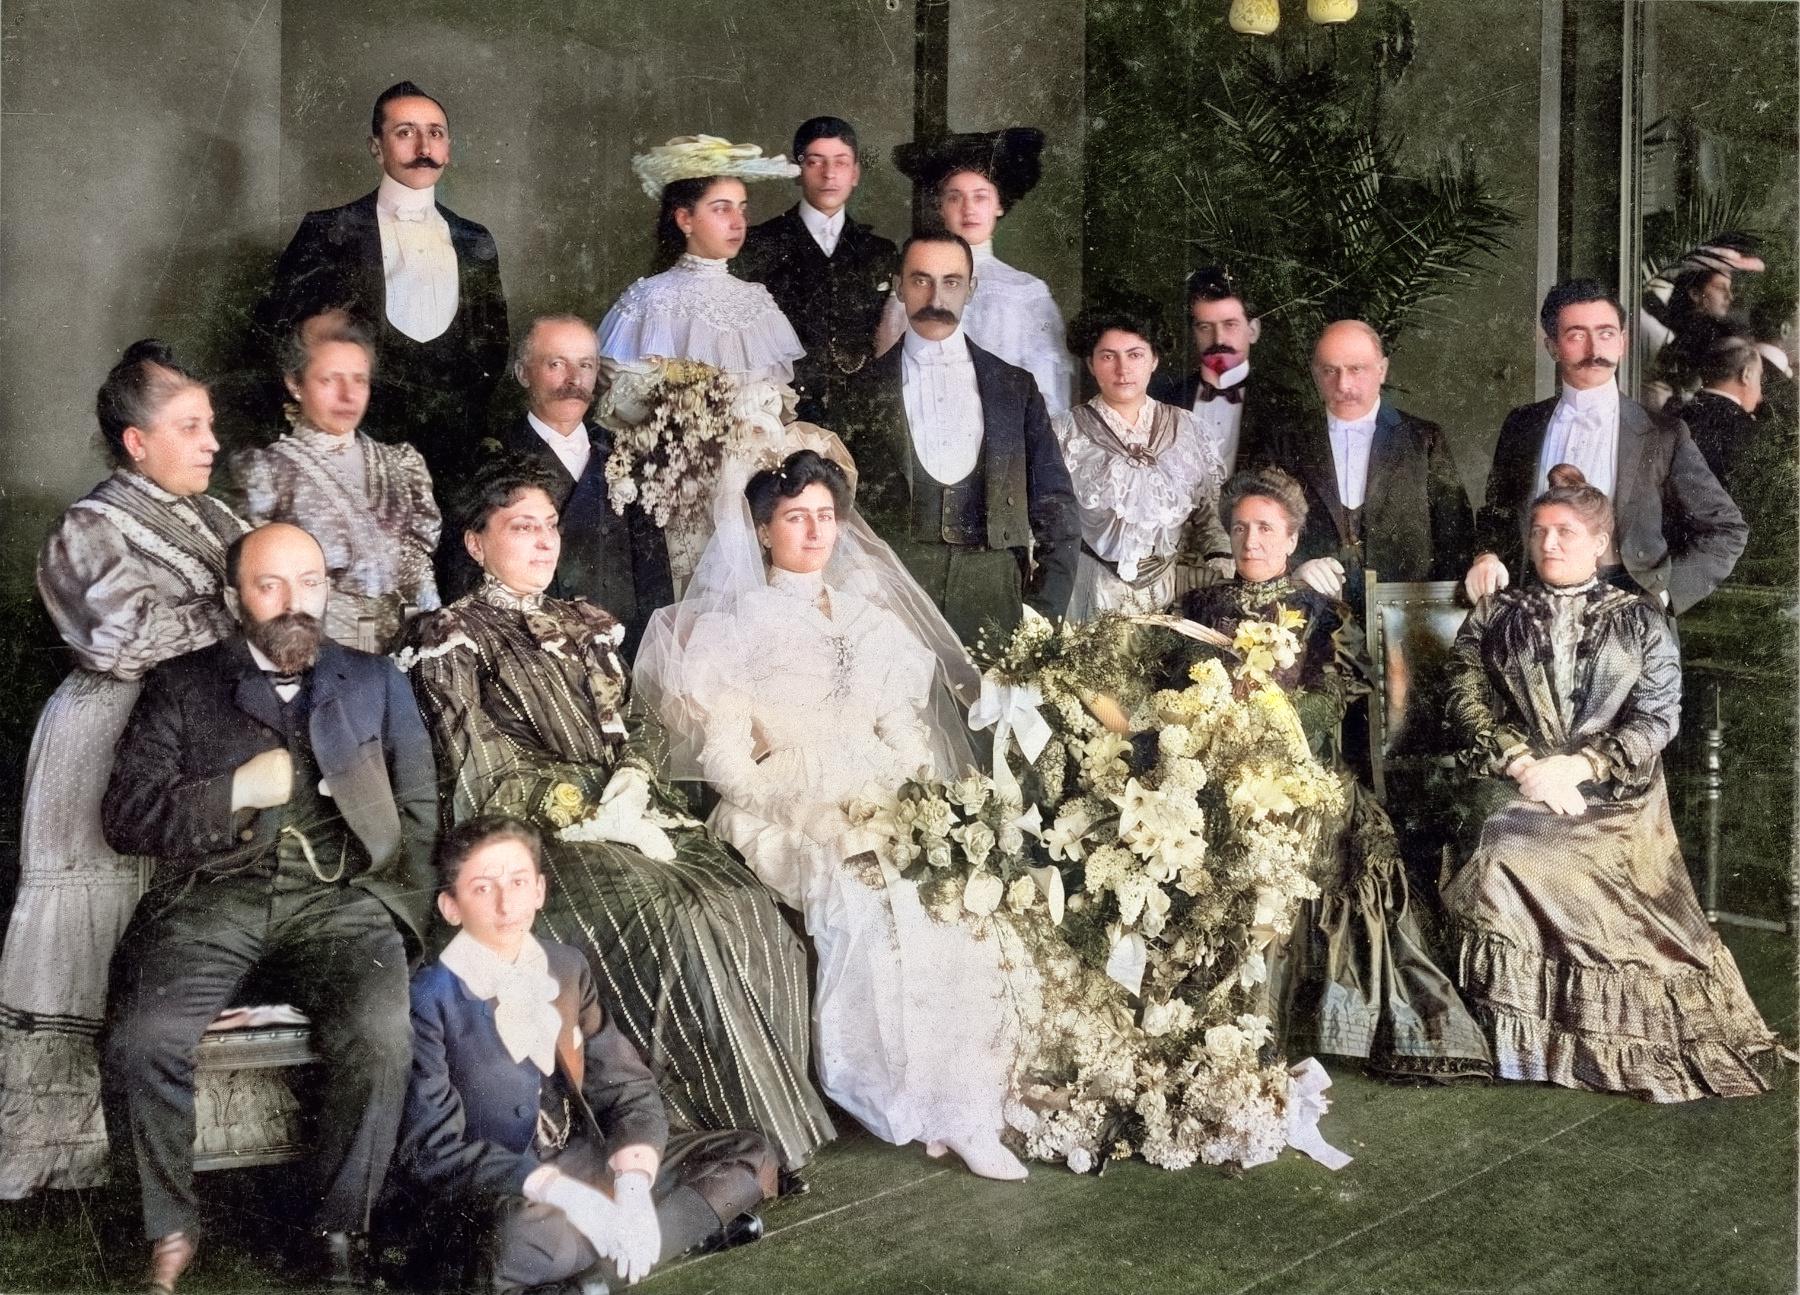 Familiefoto van Salomon Izak Vet met zijn zussen Schoontje Vet en Grietje Vet, zijn echtgenote Judith van Thijn en hun kinderen met  aanhang.
De foto is genomen in 1897 tijdens het huwelijk van zijn zoon Mozes.